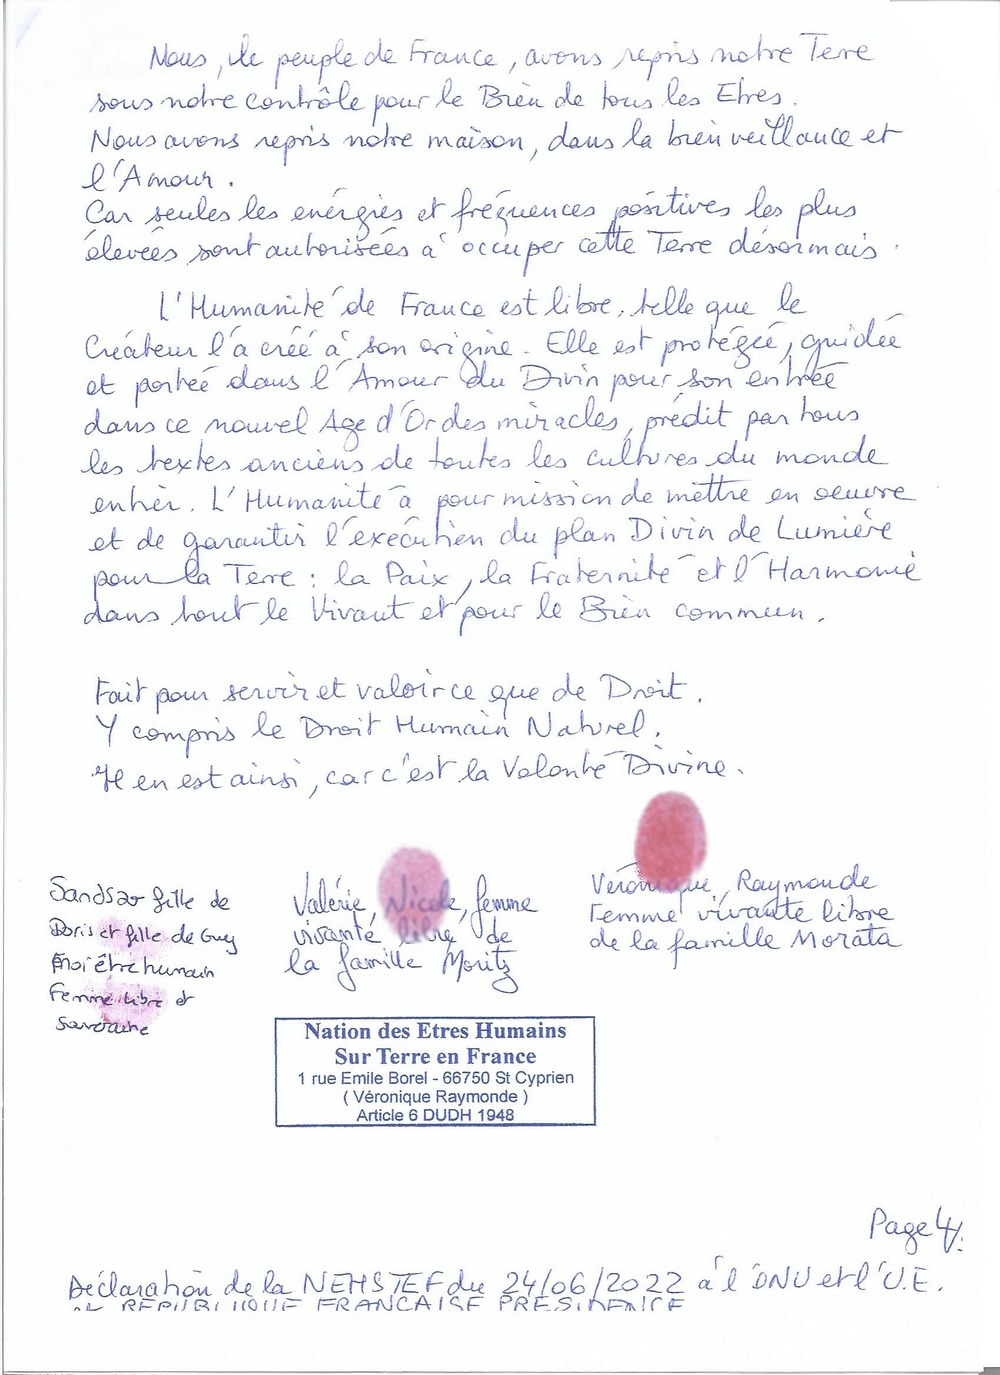 declaration lonu lue et rep franc pres page4